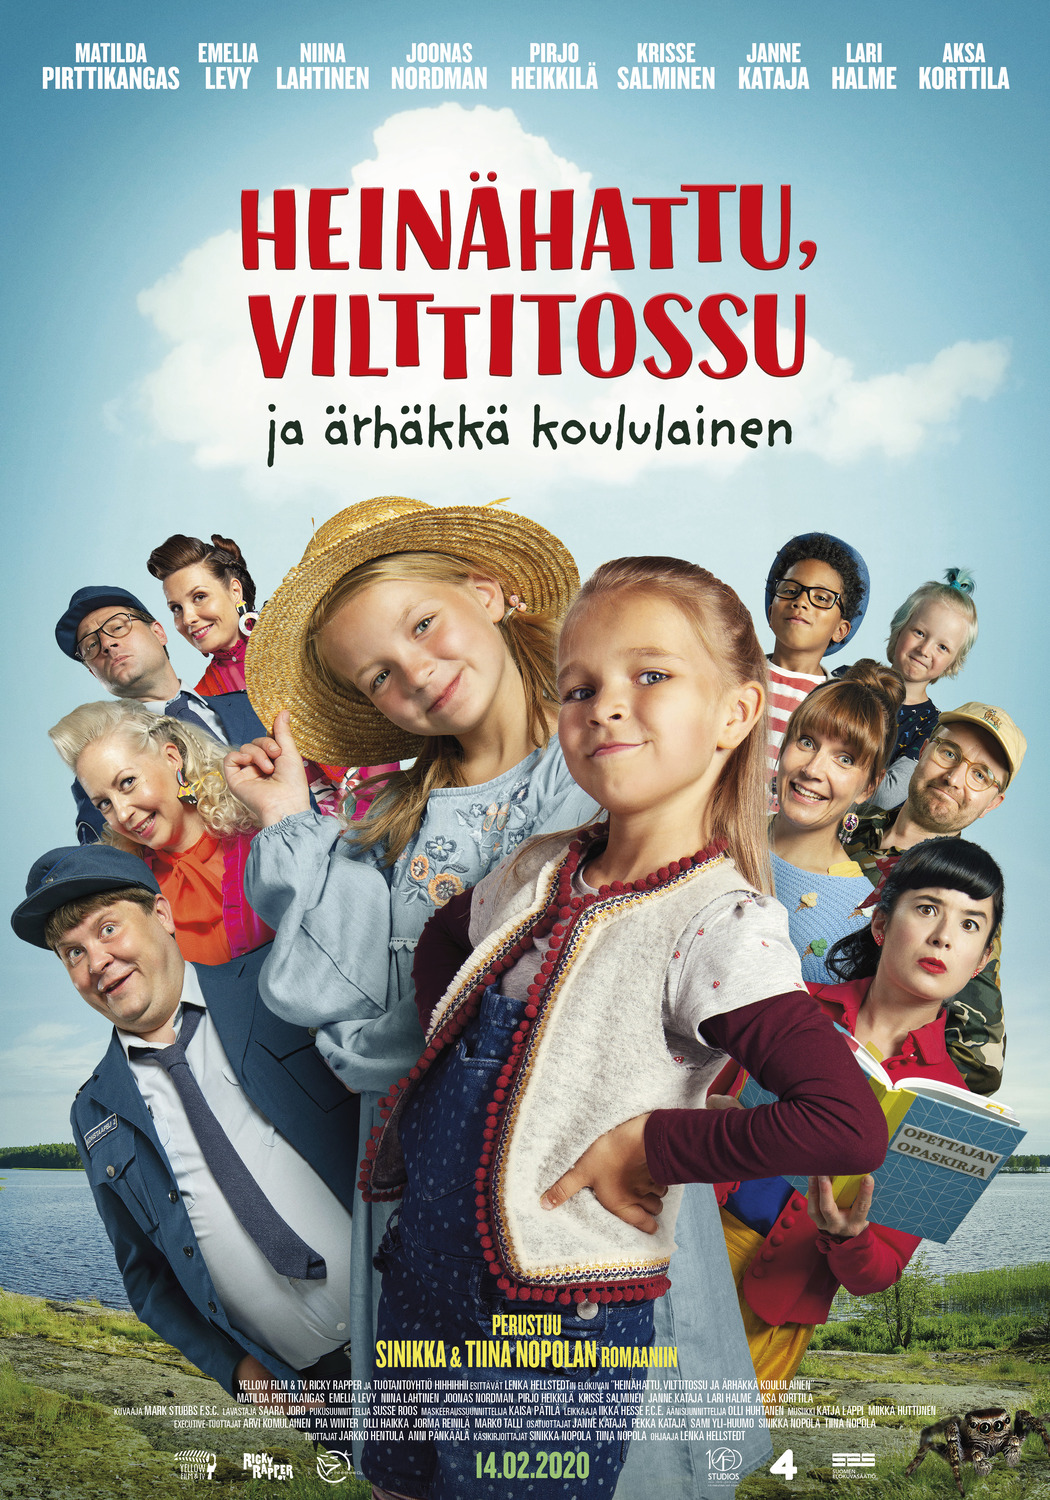 Extra Large Movie Poster Image for Heinähattu, Vilttitossu ja ärhäkkä koululainen 